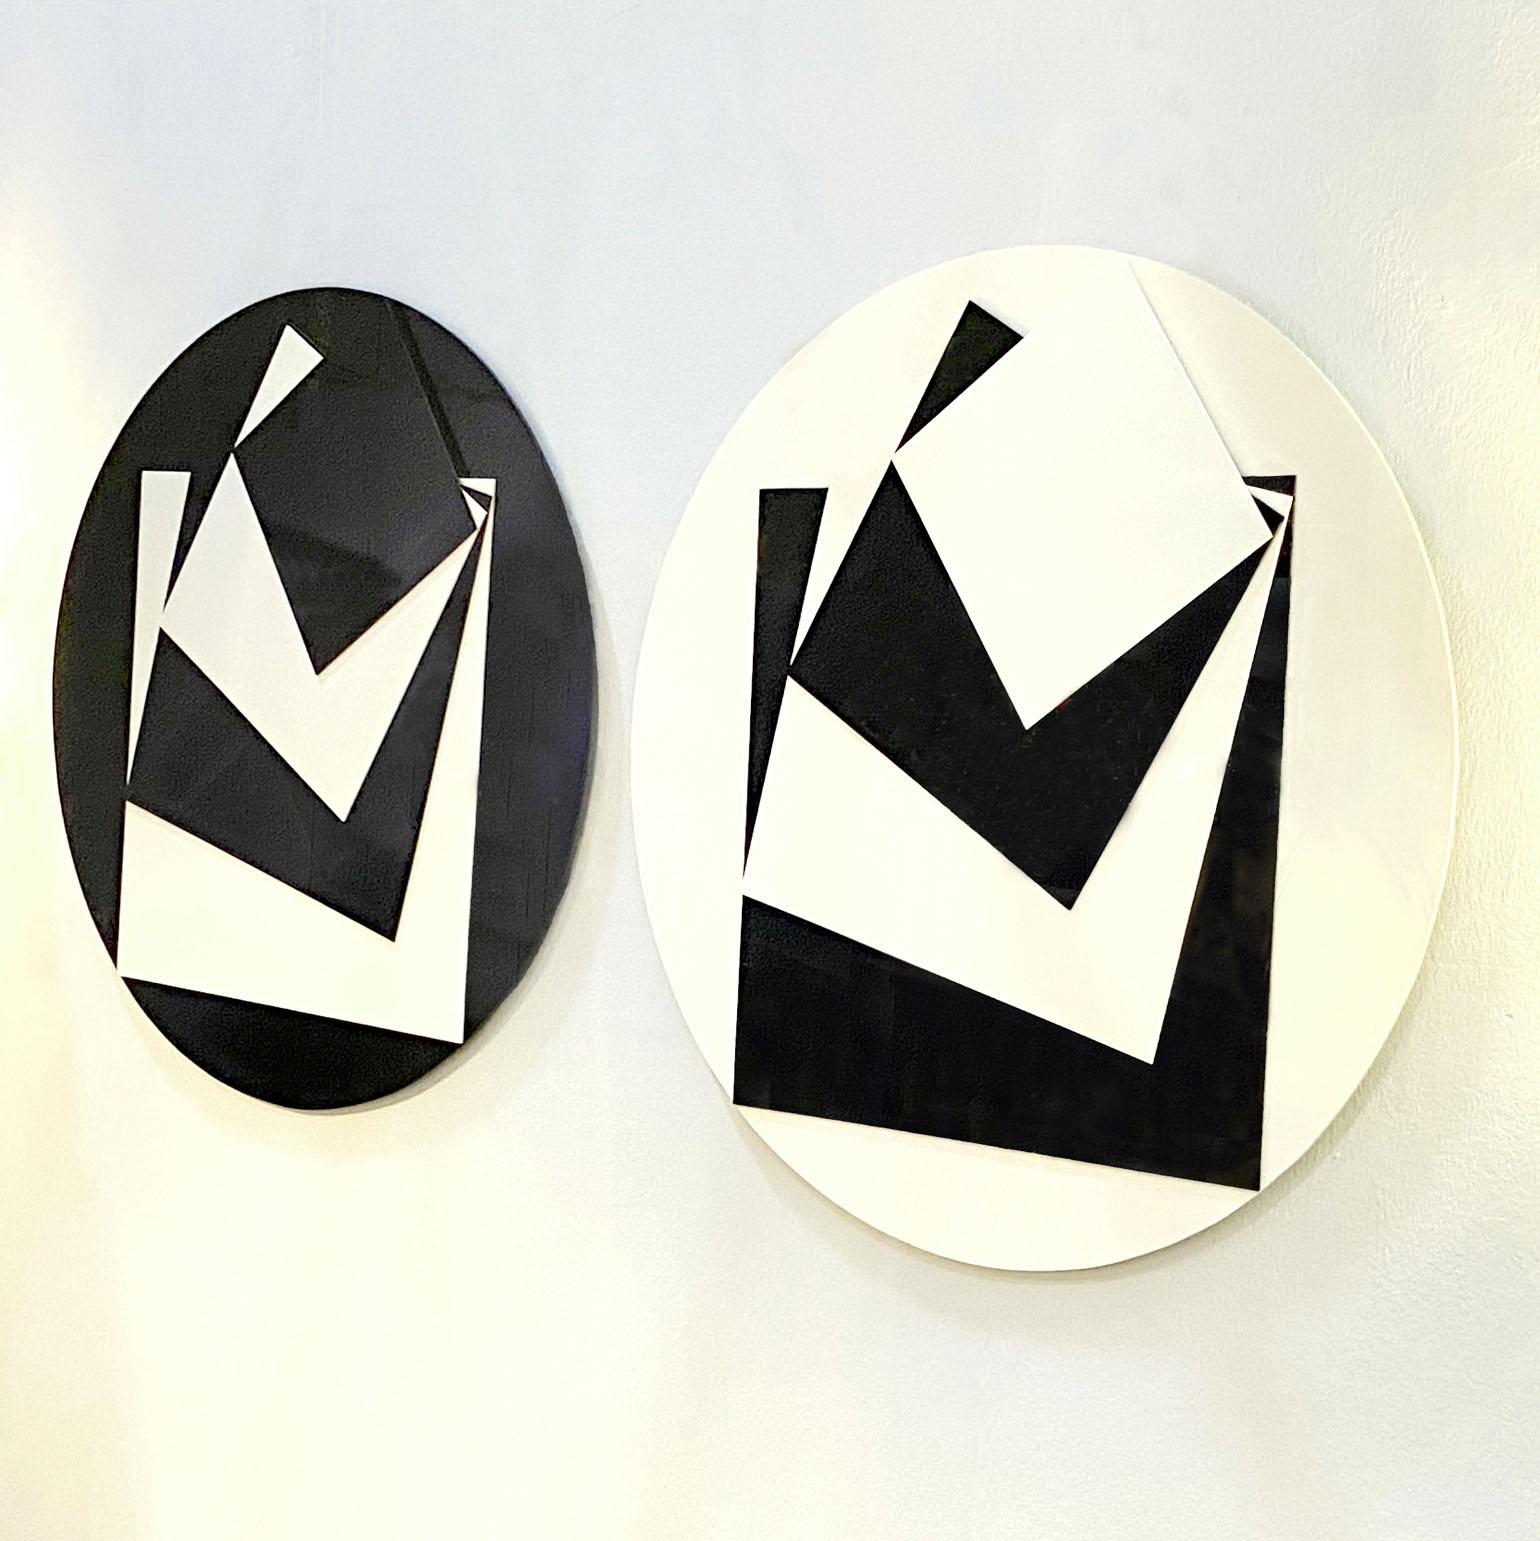 Zwei minimalistische, abstrakte, runde Plexiglas-Kunstwerke in Schwarz-Weiß von Ciryl Lixenberg, Britin, 1960er Jahre (1932 - 2015). Die Reliefs bestehen aus Quadraten aus abwechselnd schwarzen und weißen Plexiglasplatten, die auf einem